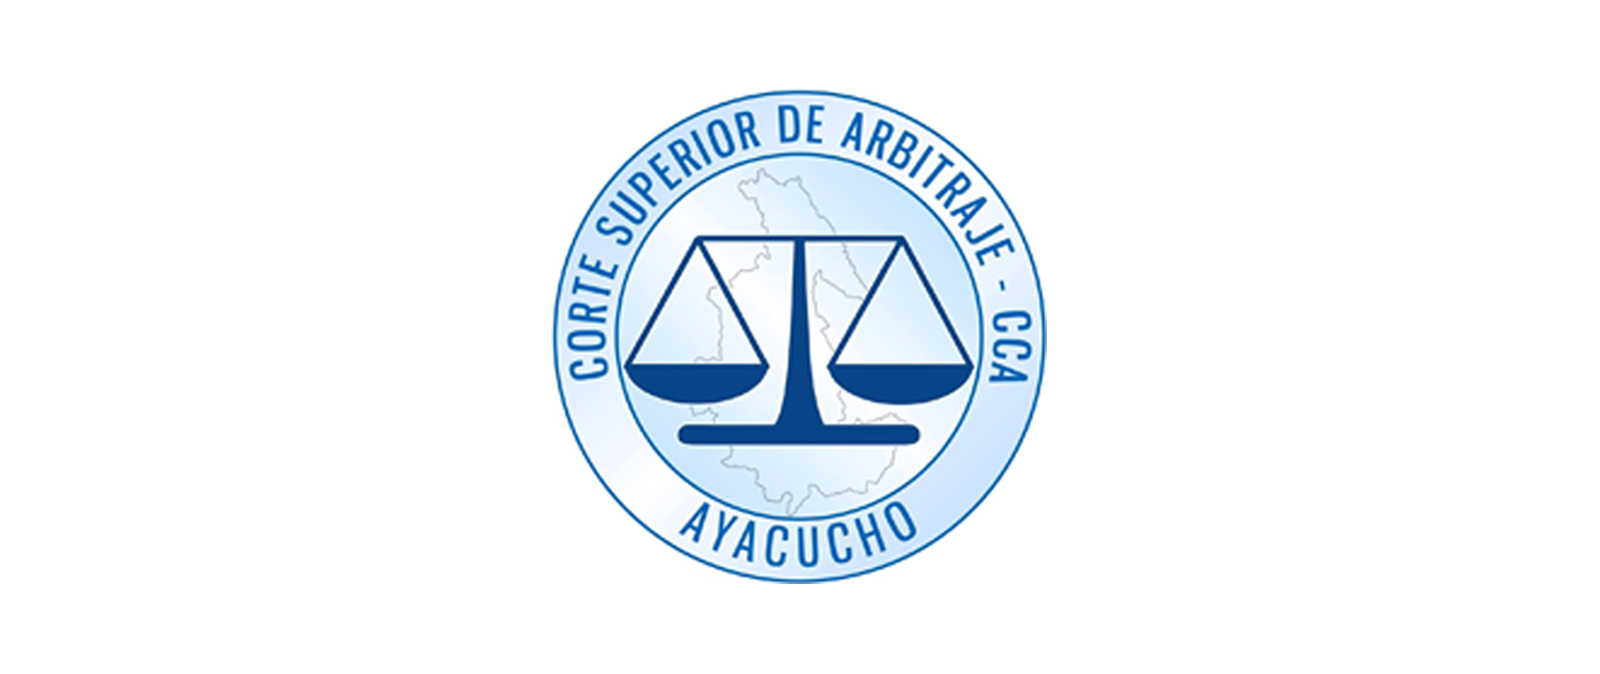 Corte Superior de Arbitraje de Ayacucho